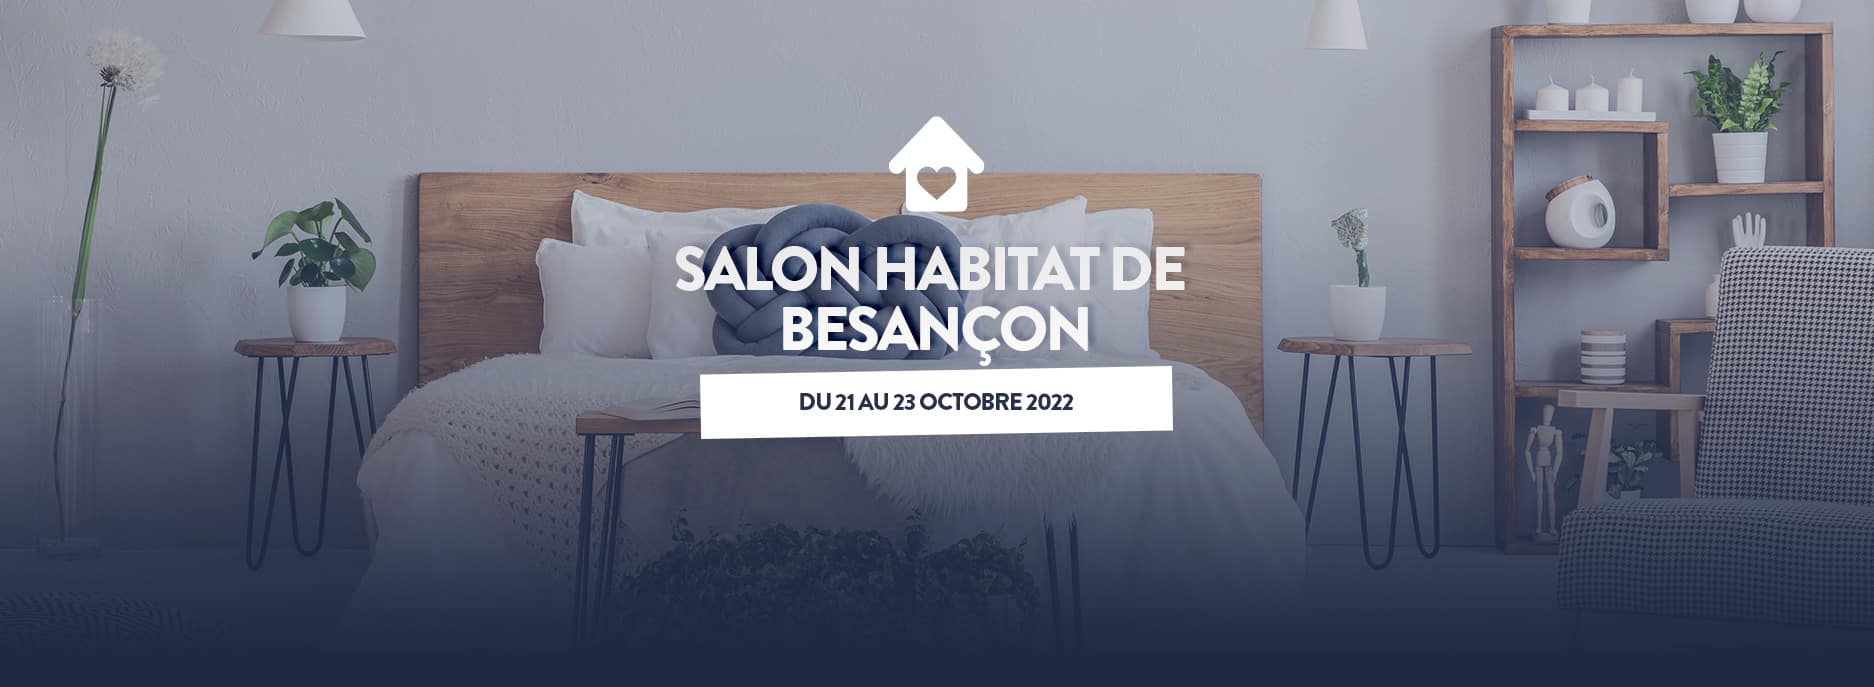 Salon Habitat de Besançon du 21 au 23 octobre